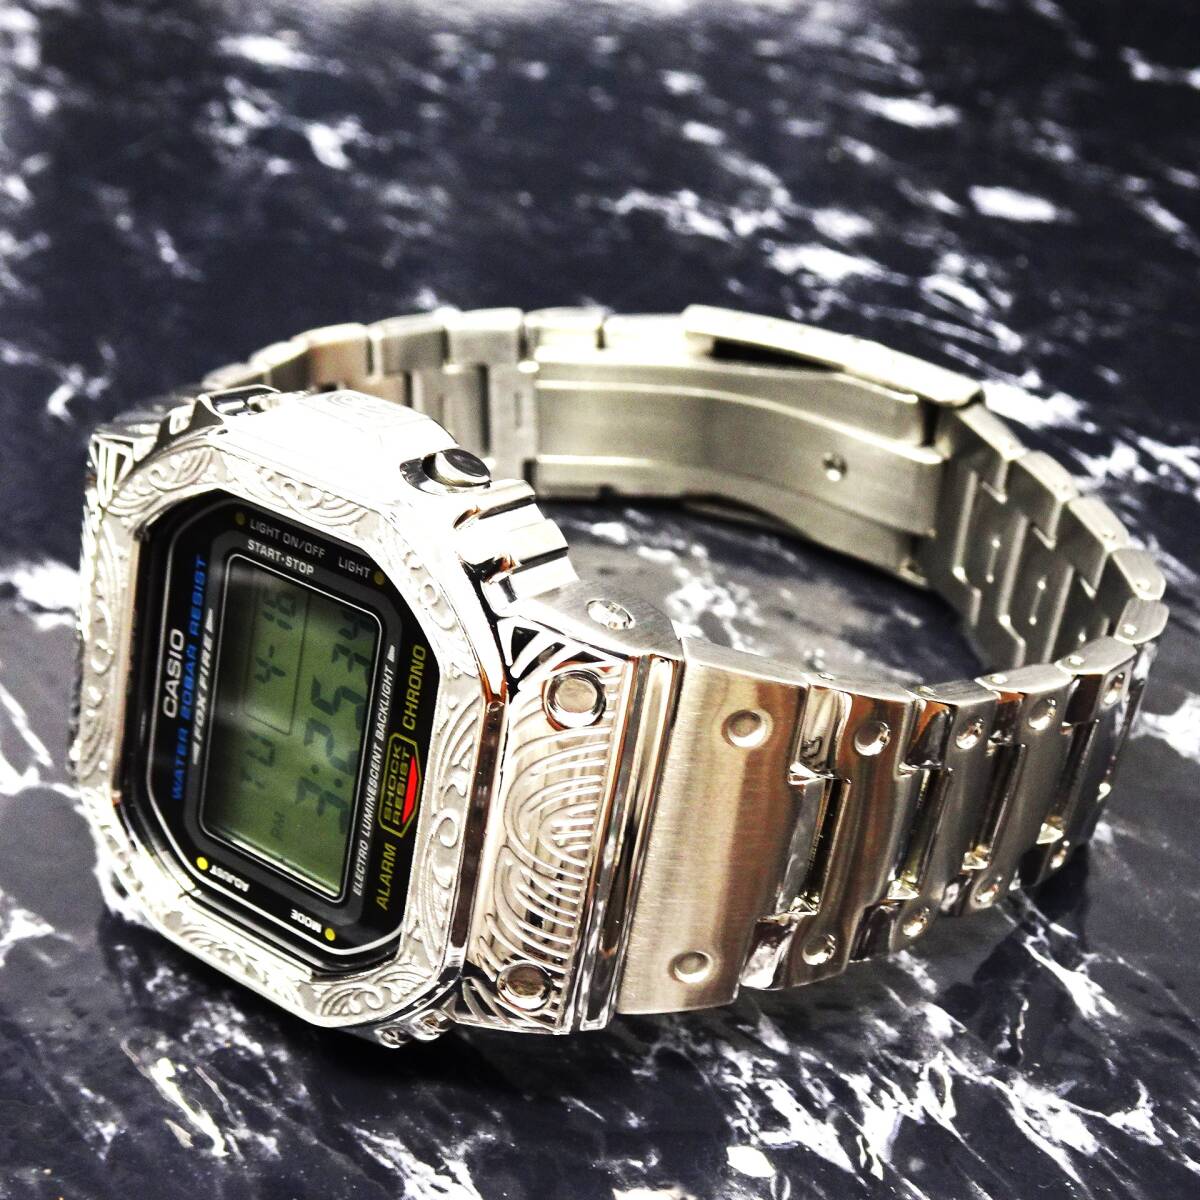 〓送料無料〓新品〓Gショックカスタム本体付きDW5600デジタル腕時計ステンレス製ベネチアン柄エンボス加工ベゼル・フルメタルモデルの画像1